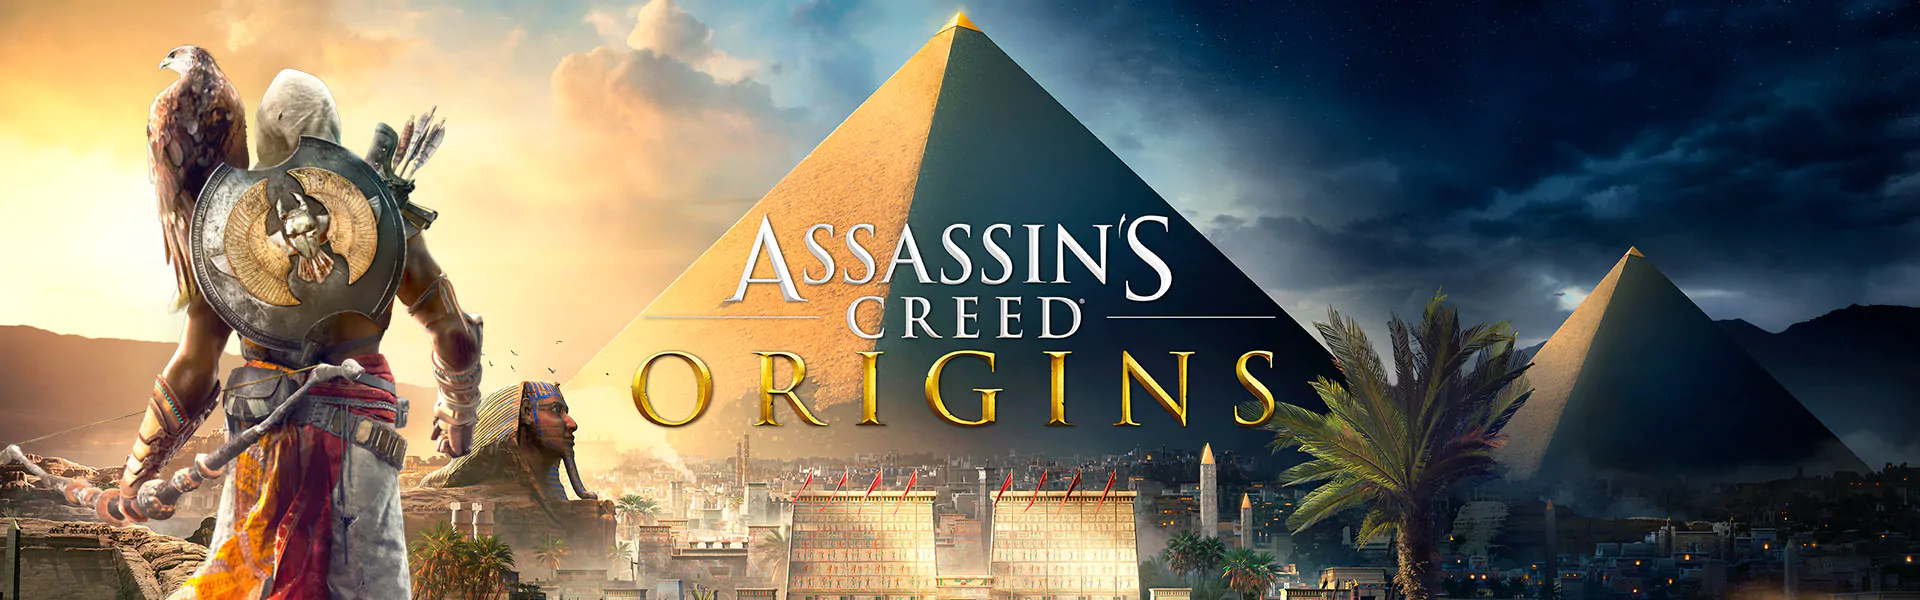 Revelado o trailer de Assassin’s Creed Origins | E3 2017